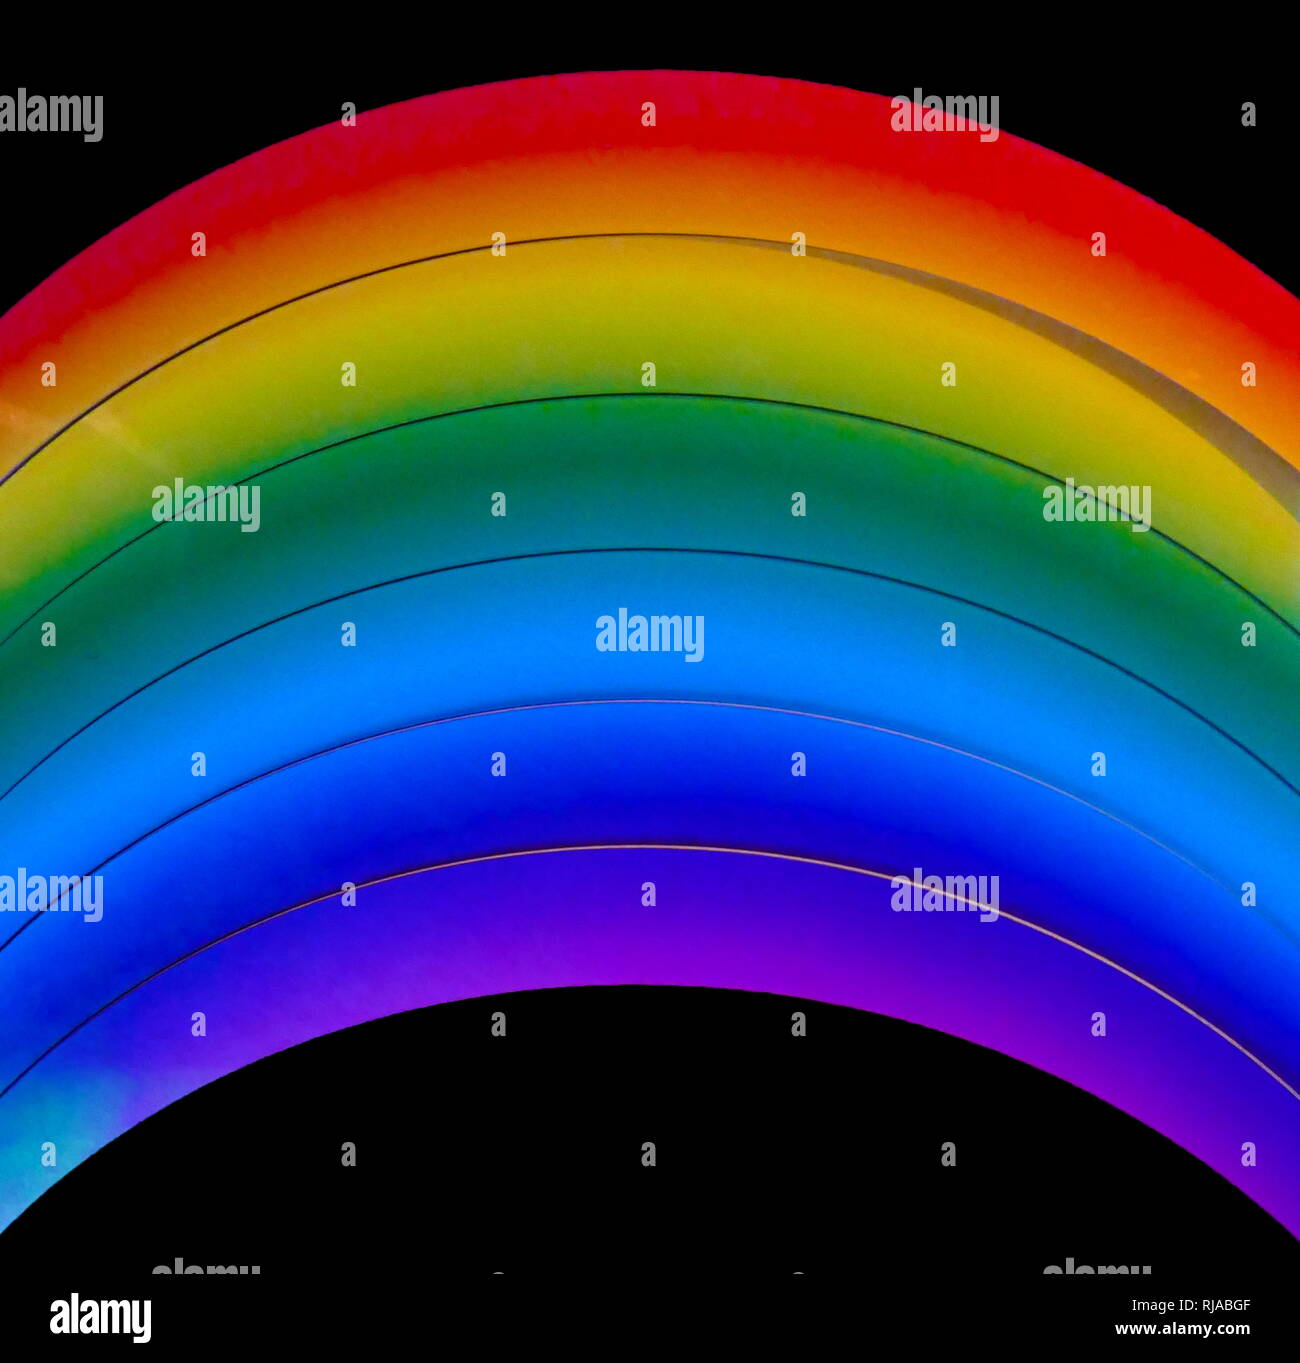 Ein Farbspektrum. Dieser Begriff wurde erstmals wissenschaftlich in der Optik die Farben des Regenbogens im sichtbaren Licht zu beschreiben, nachdem er durch ein Prisma. Im 17. Jahrhundert, das Wort Spektrum wurde in der Optik von Isaac Newton eingeführt, der sich auf die Auswahl der Farben beobachtet, wenn weißes Licht durch ein Prisma verteilt wurde. Stockfoto